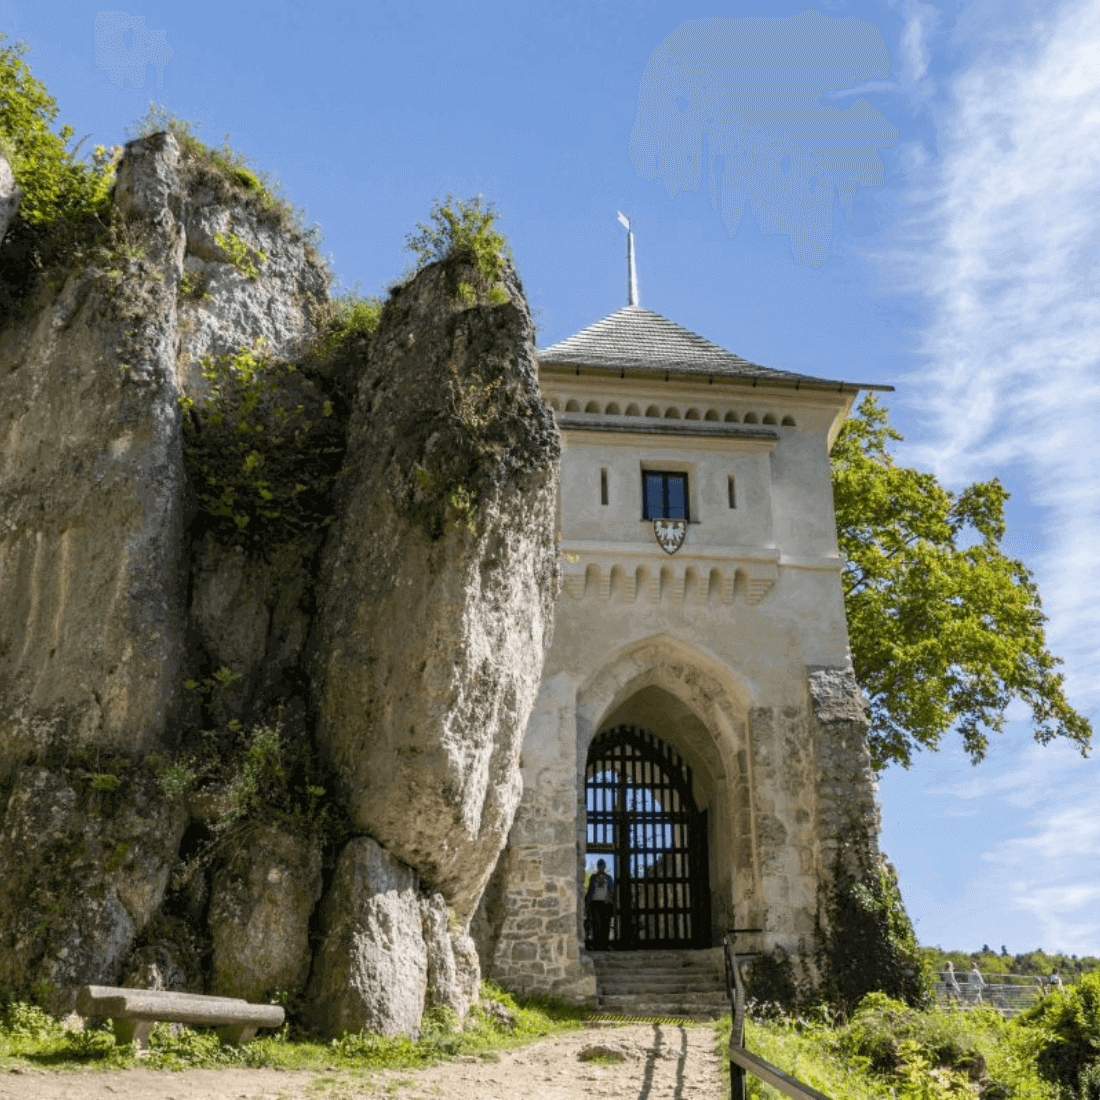 Zamek w Ojcowie - widok na bramę